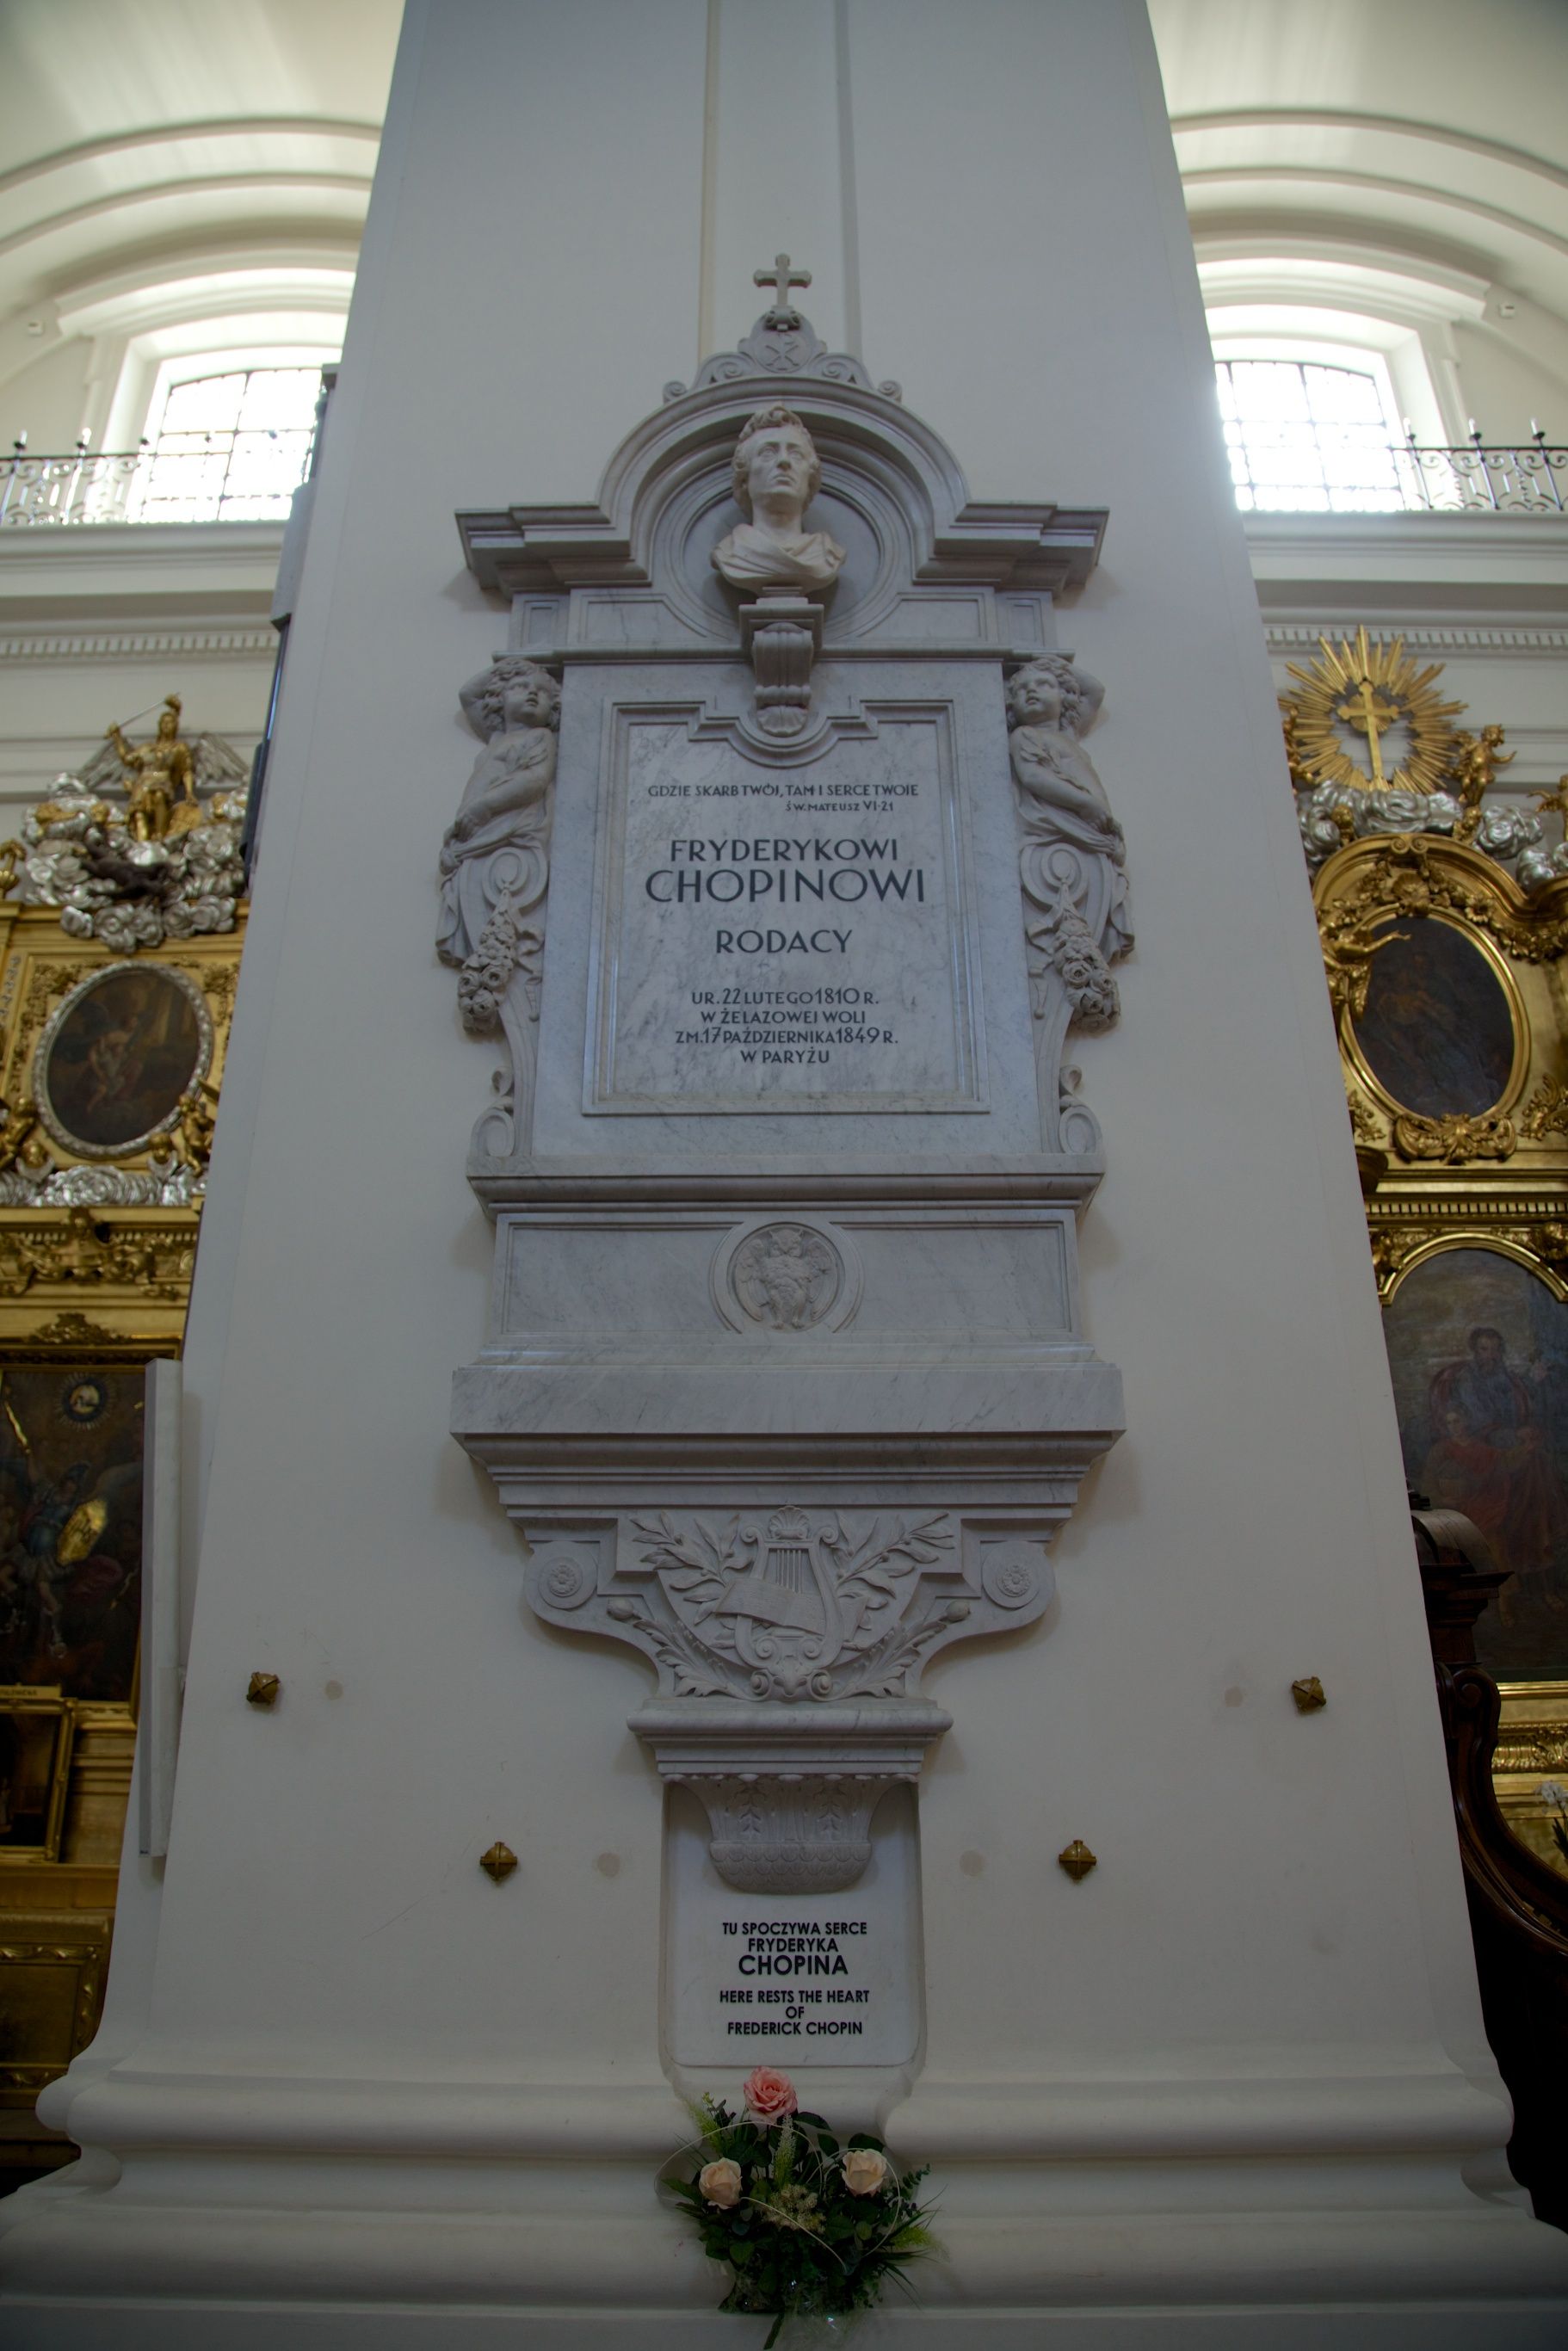 蕭邦 1849 年逝世，喪禮上的音樂，包括充滿歎息的 E 小調前奏曲。他的身驅長埋巴黎佩爾拉雪茲公墓 (Cimetière du Père-Lachaise)，他的心臟幾經輾轉，於 1879 年被封在華沙聖十架教堂 (Kościół Świętego Krzyża) 的柱內，一償蕭邦生前回國的心願。